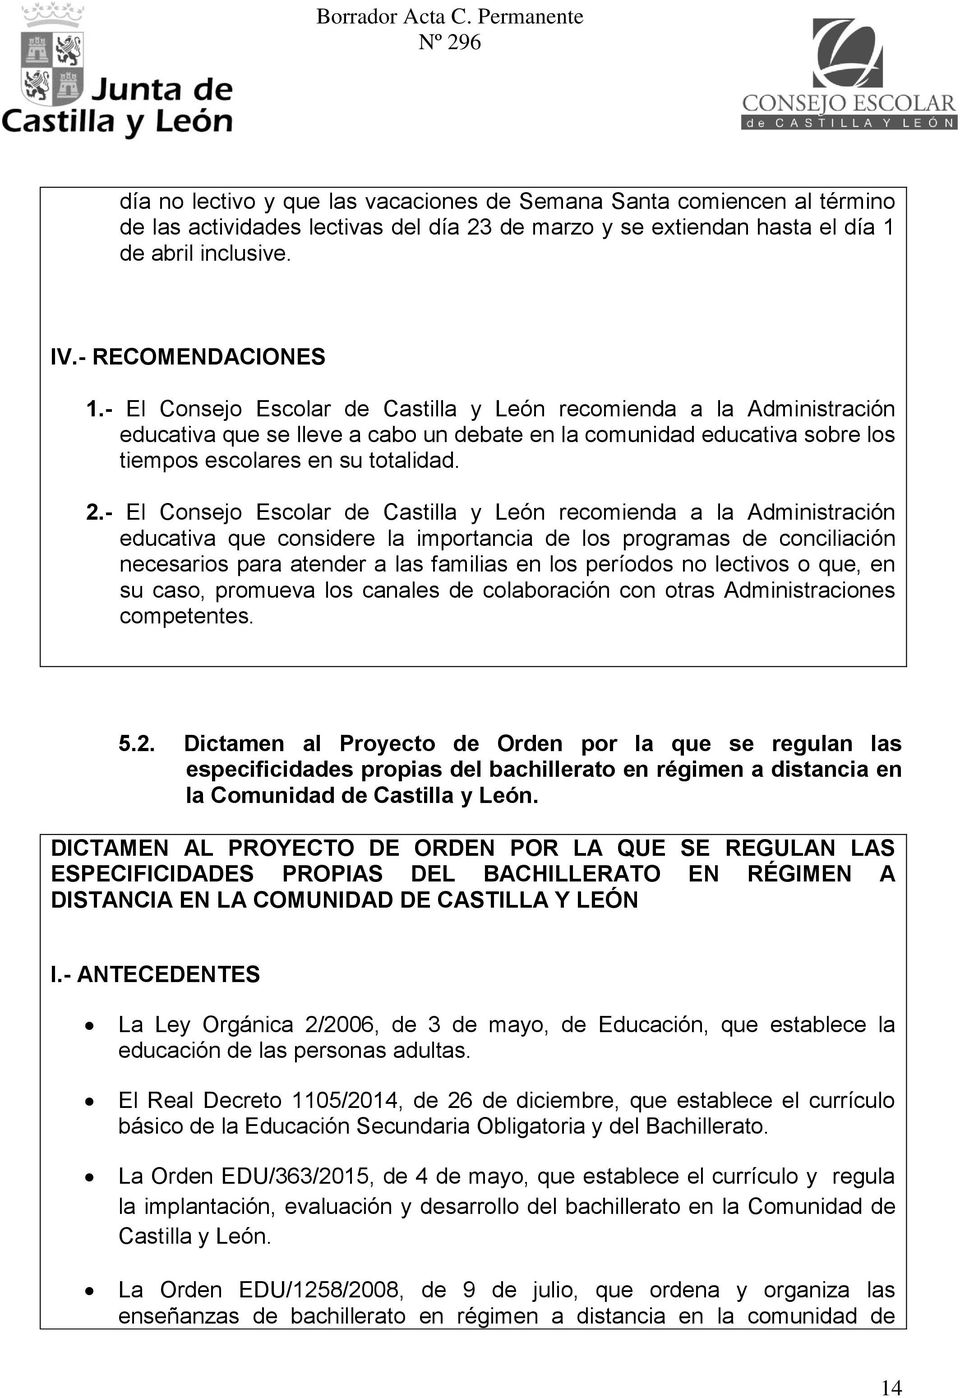 - El Consejo Escolar de Castilla y León recomienda a la Administración educativa que considere la importancia de los programas de conciliación necesarios para atender a las familias en los períodos